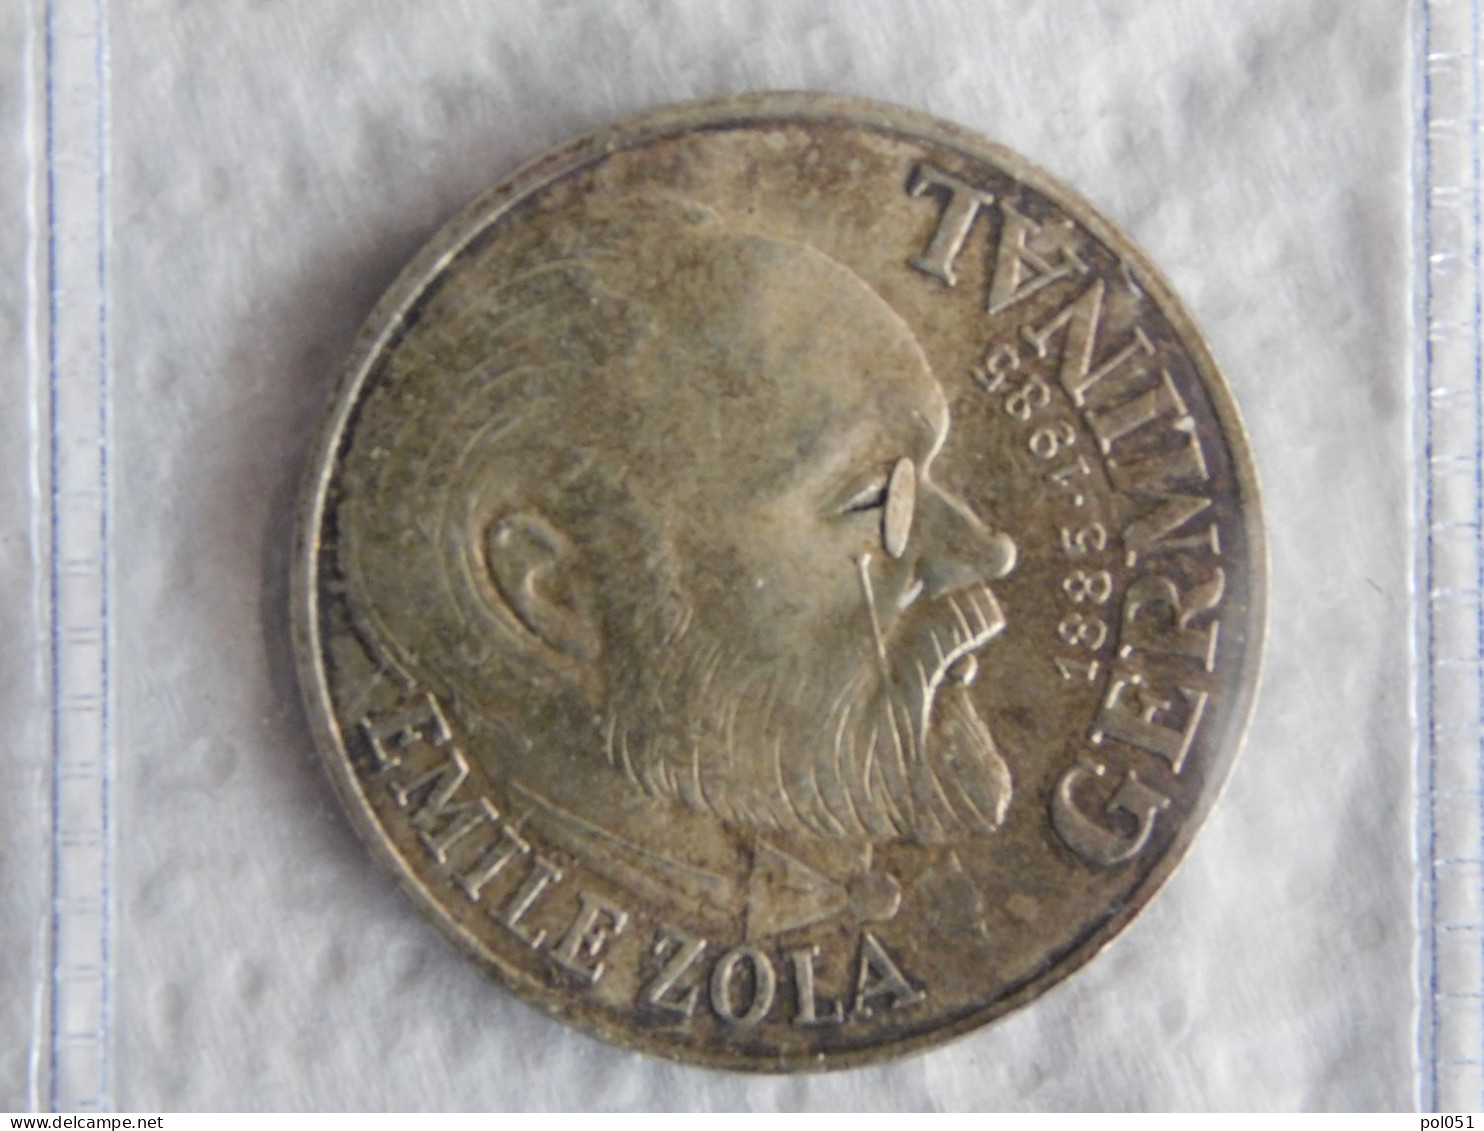 France 100 Francs 1985 Emile Zola Argent Silver (1125) - 100 Francs